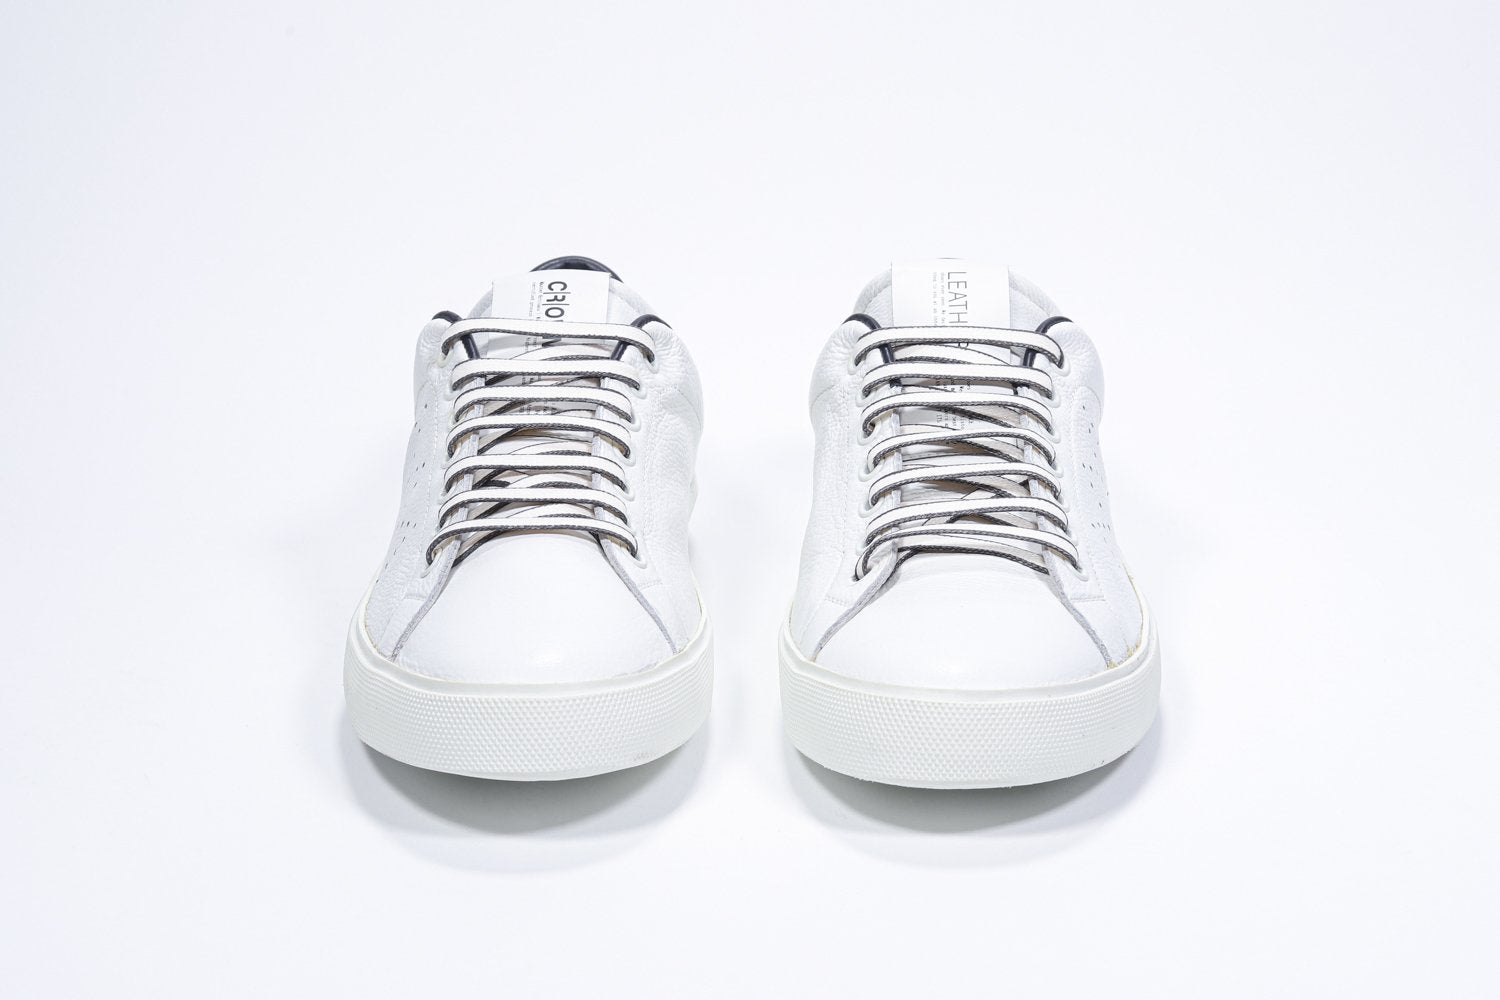 Vista frontale di BASSE  sneaker  bianco con dettagli navy e logo della corona traforato sulla tomaia. Tomaia in pelle e suola in gomma bianca.